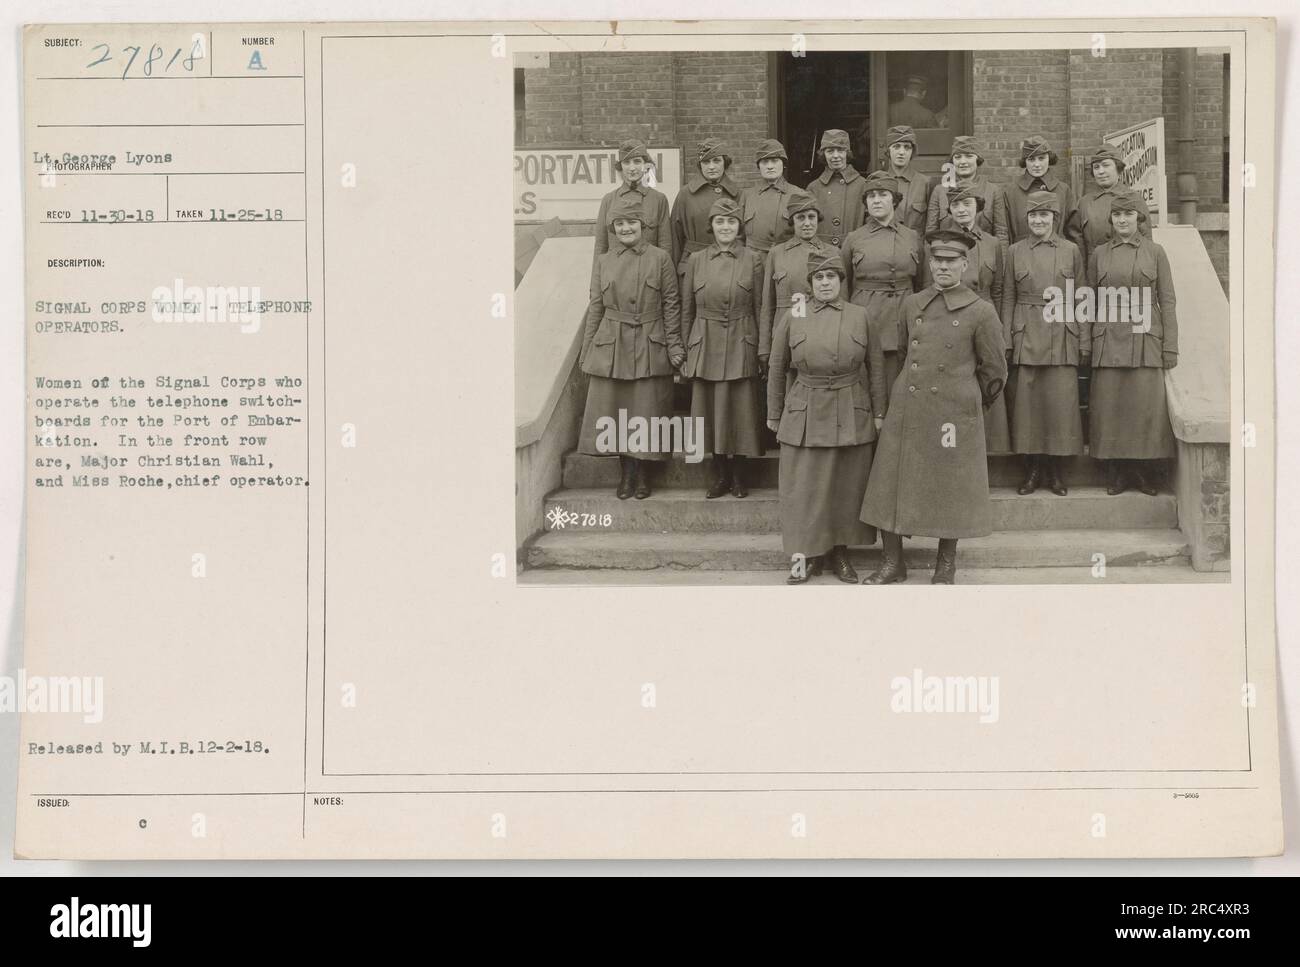 Le donne del Signal Corps che svolgono i loro compiti al porto d'imbarco durante la prima guerra mondiale. Il maggiore Christian Wahl e la signorina Roche, capo operatore, sono visti in prima fila. Questa foto è stata scattata il 25 novembre 1918 e pubblicata da M.I.B. Foto Stock